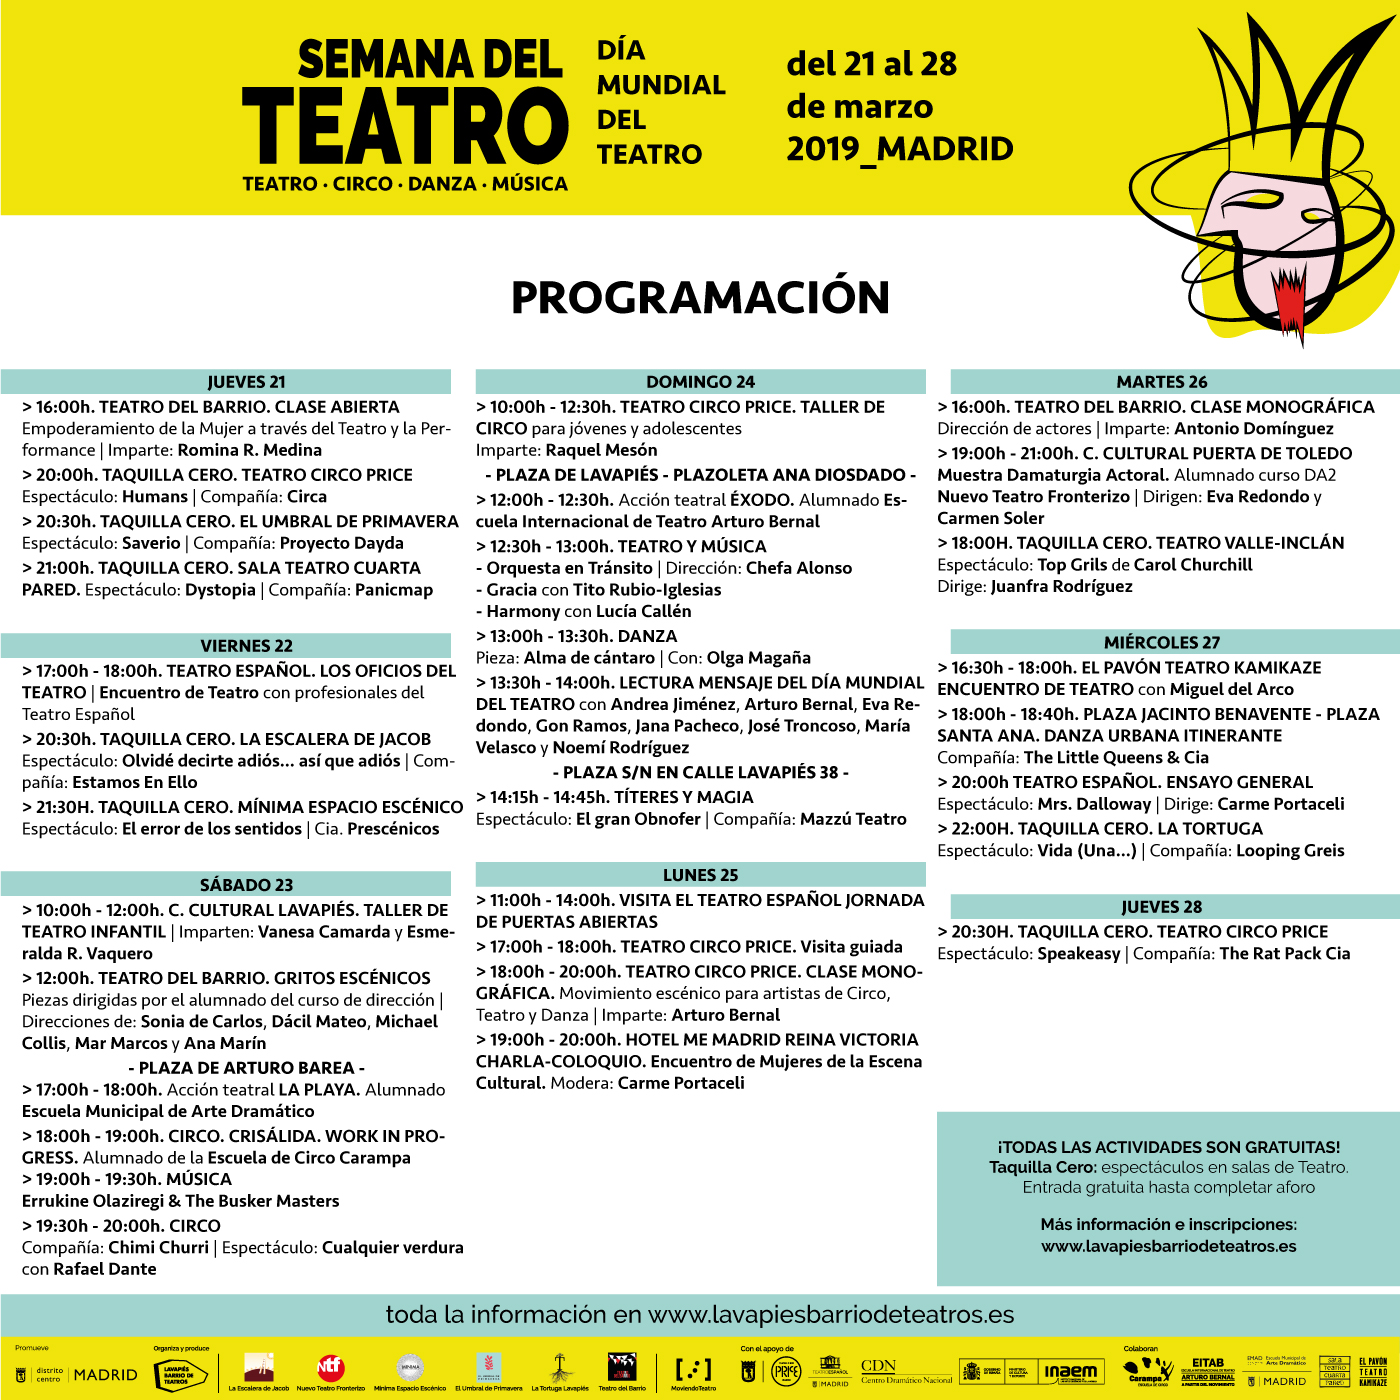 Programación Semana del Teatro Madrid. Día Mundial del Teatro